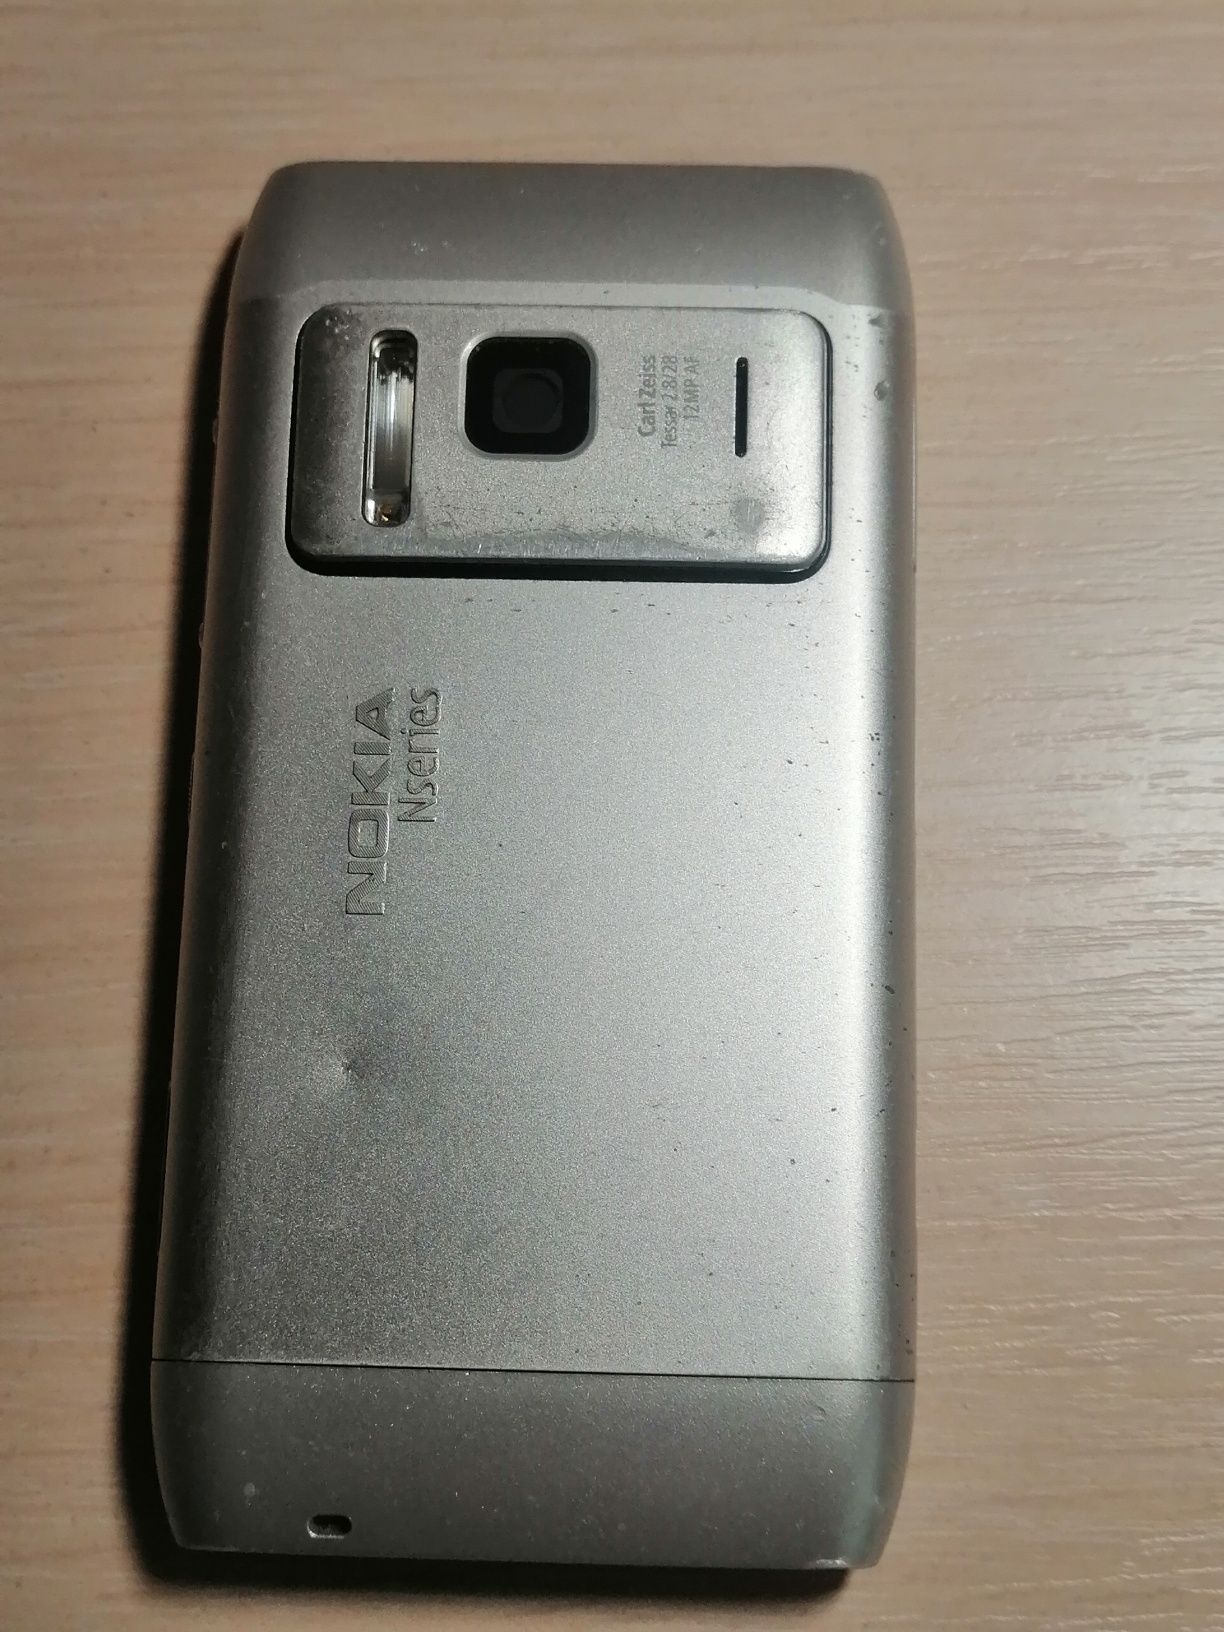 Телефон мобильный,, Nokia N8 silver,, оригинал